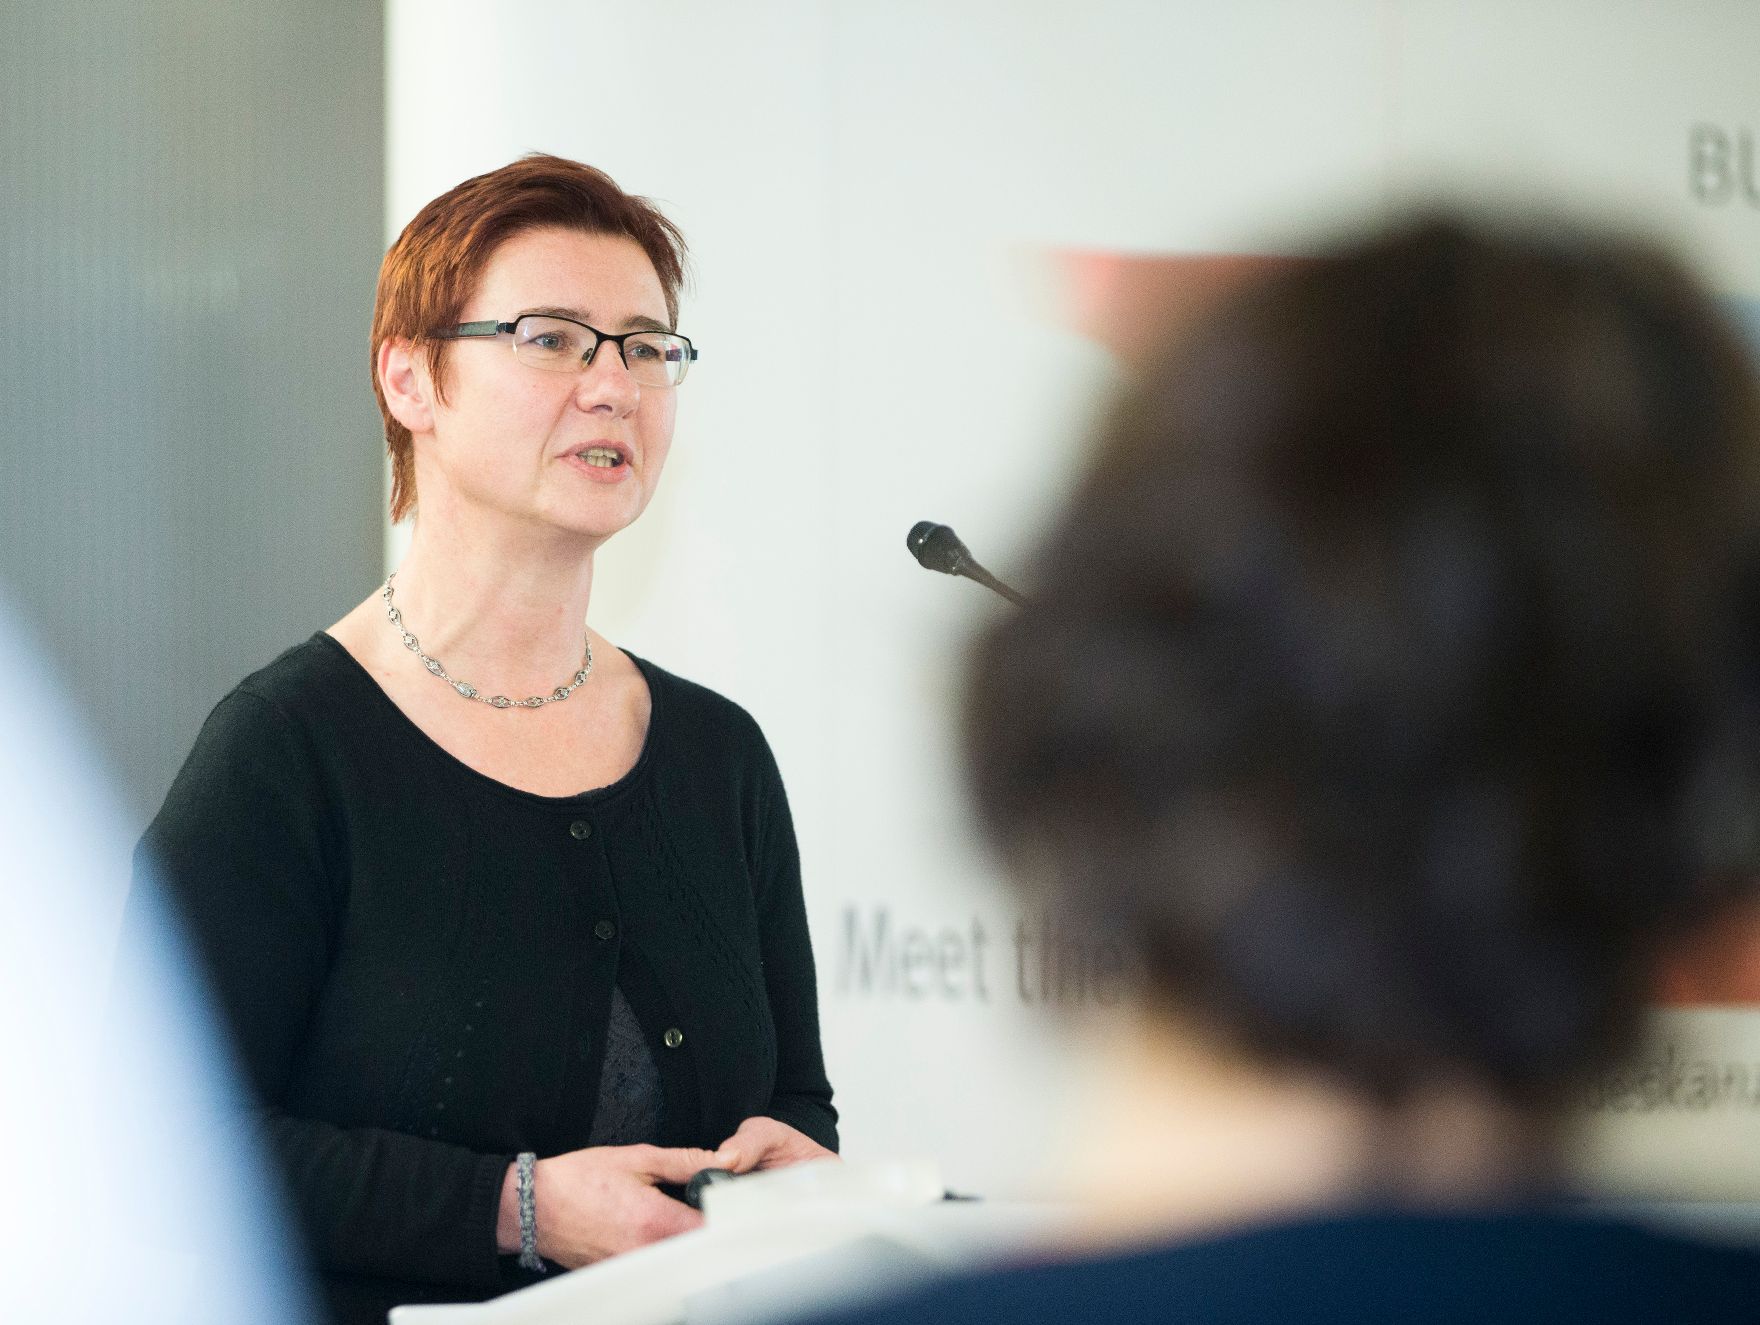 Am 13. November 2017 fand die Veranstaltung "Gender Pay Gap: Fakten, Handlungen, Ergebnisse" statt. Im Bild Margit Schratzenstaller-Altzinger, Stellvertretende Leiterin des Österreichischen Institut für Wirtschaftsforschung Wien.